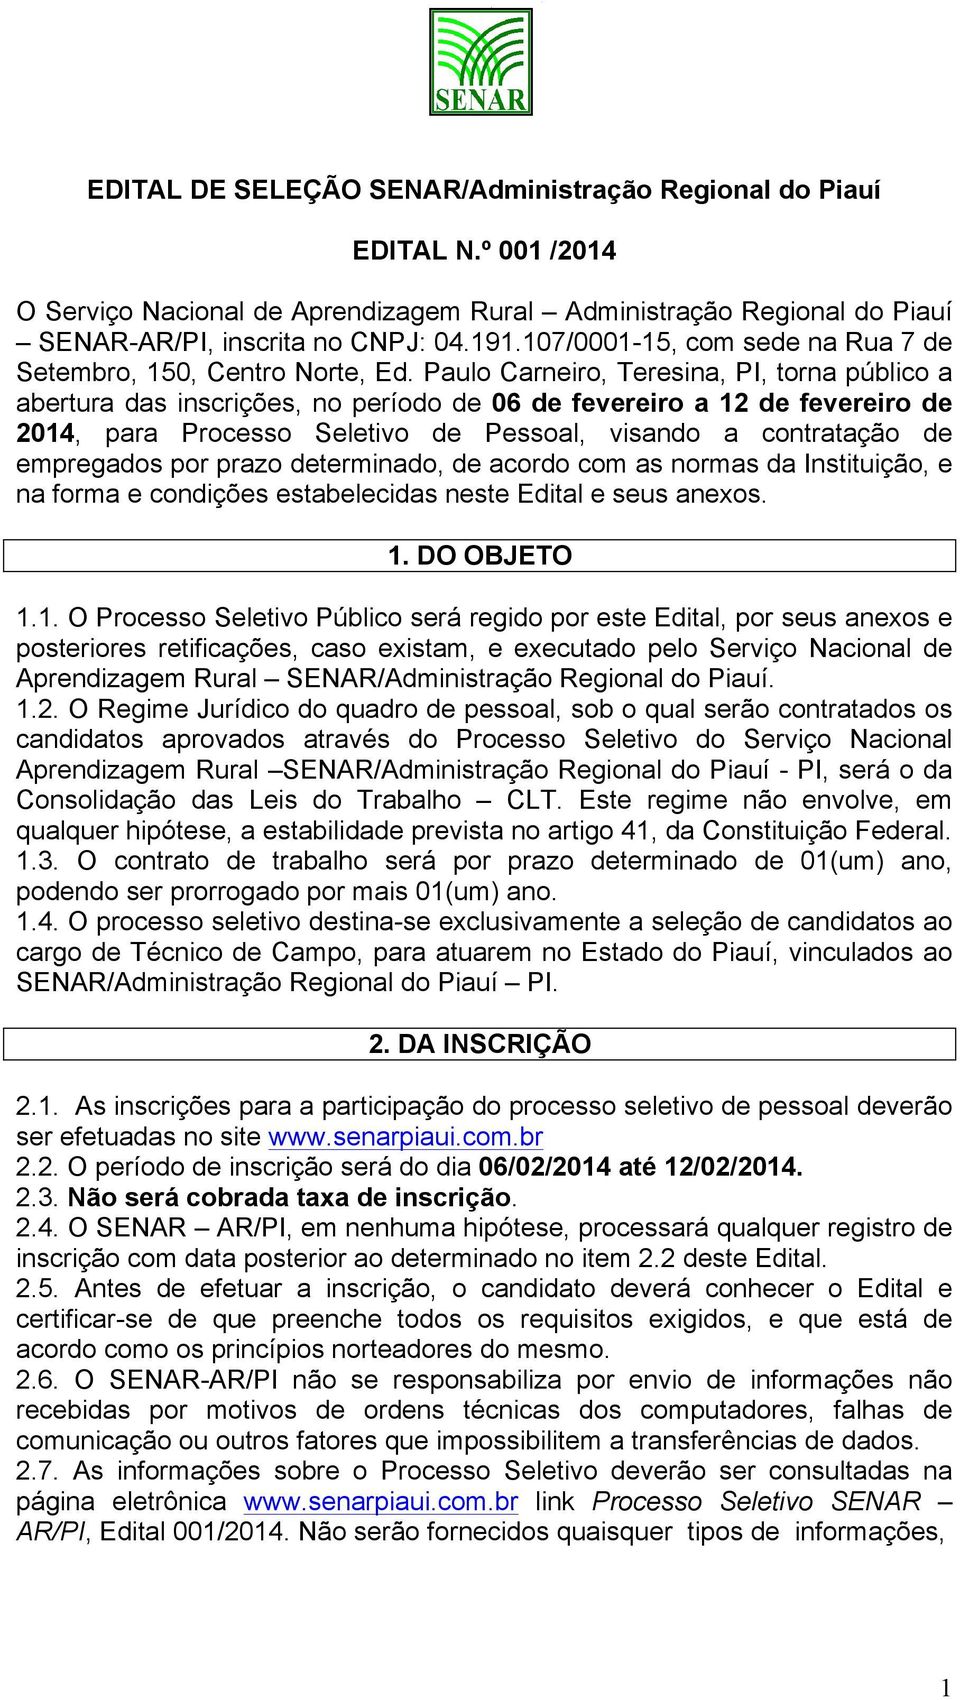 Paulo Carneiro, Teresina, PI, torna público a abertura das inscrições, no período de 06 de fevereiro a 12 de fevereiro de 2014, para Processo Seletivo de Pessoal, visando a contratação de empregados